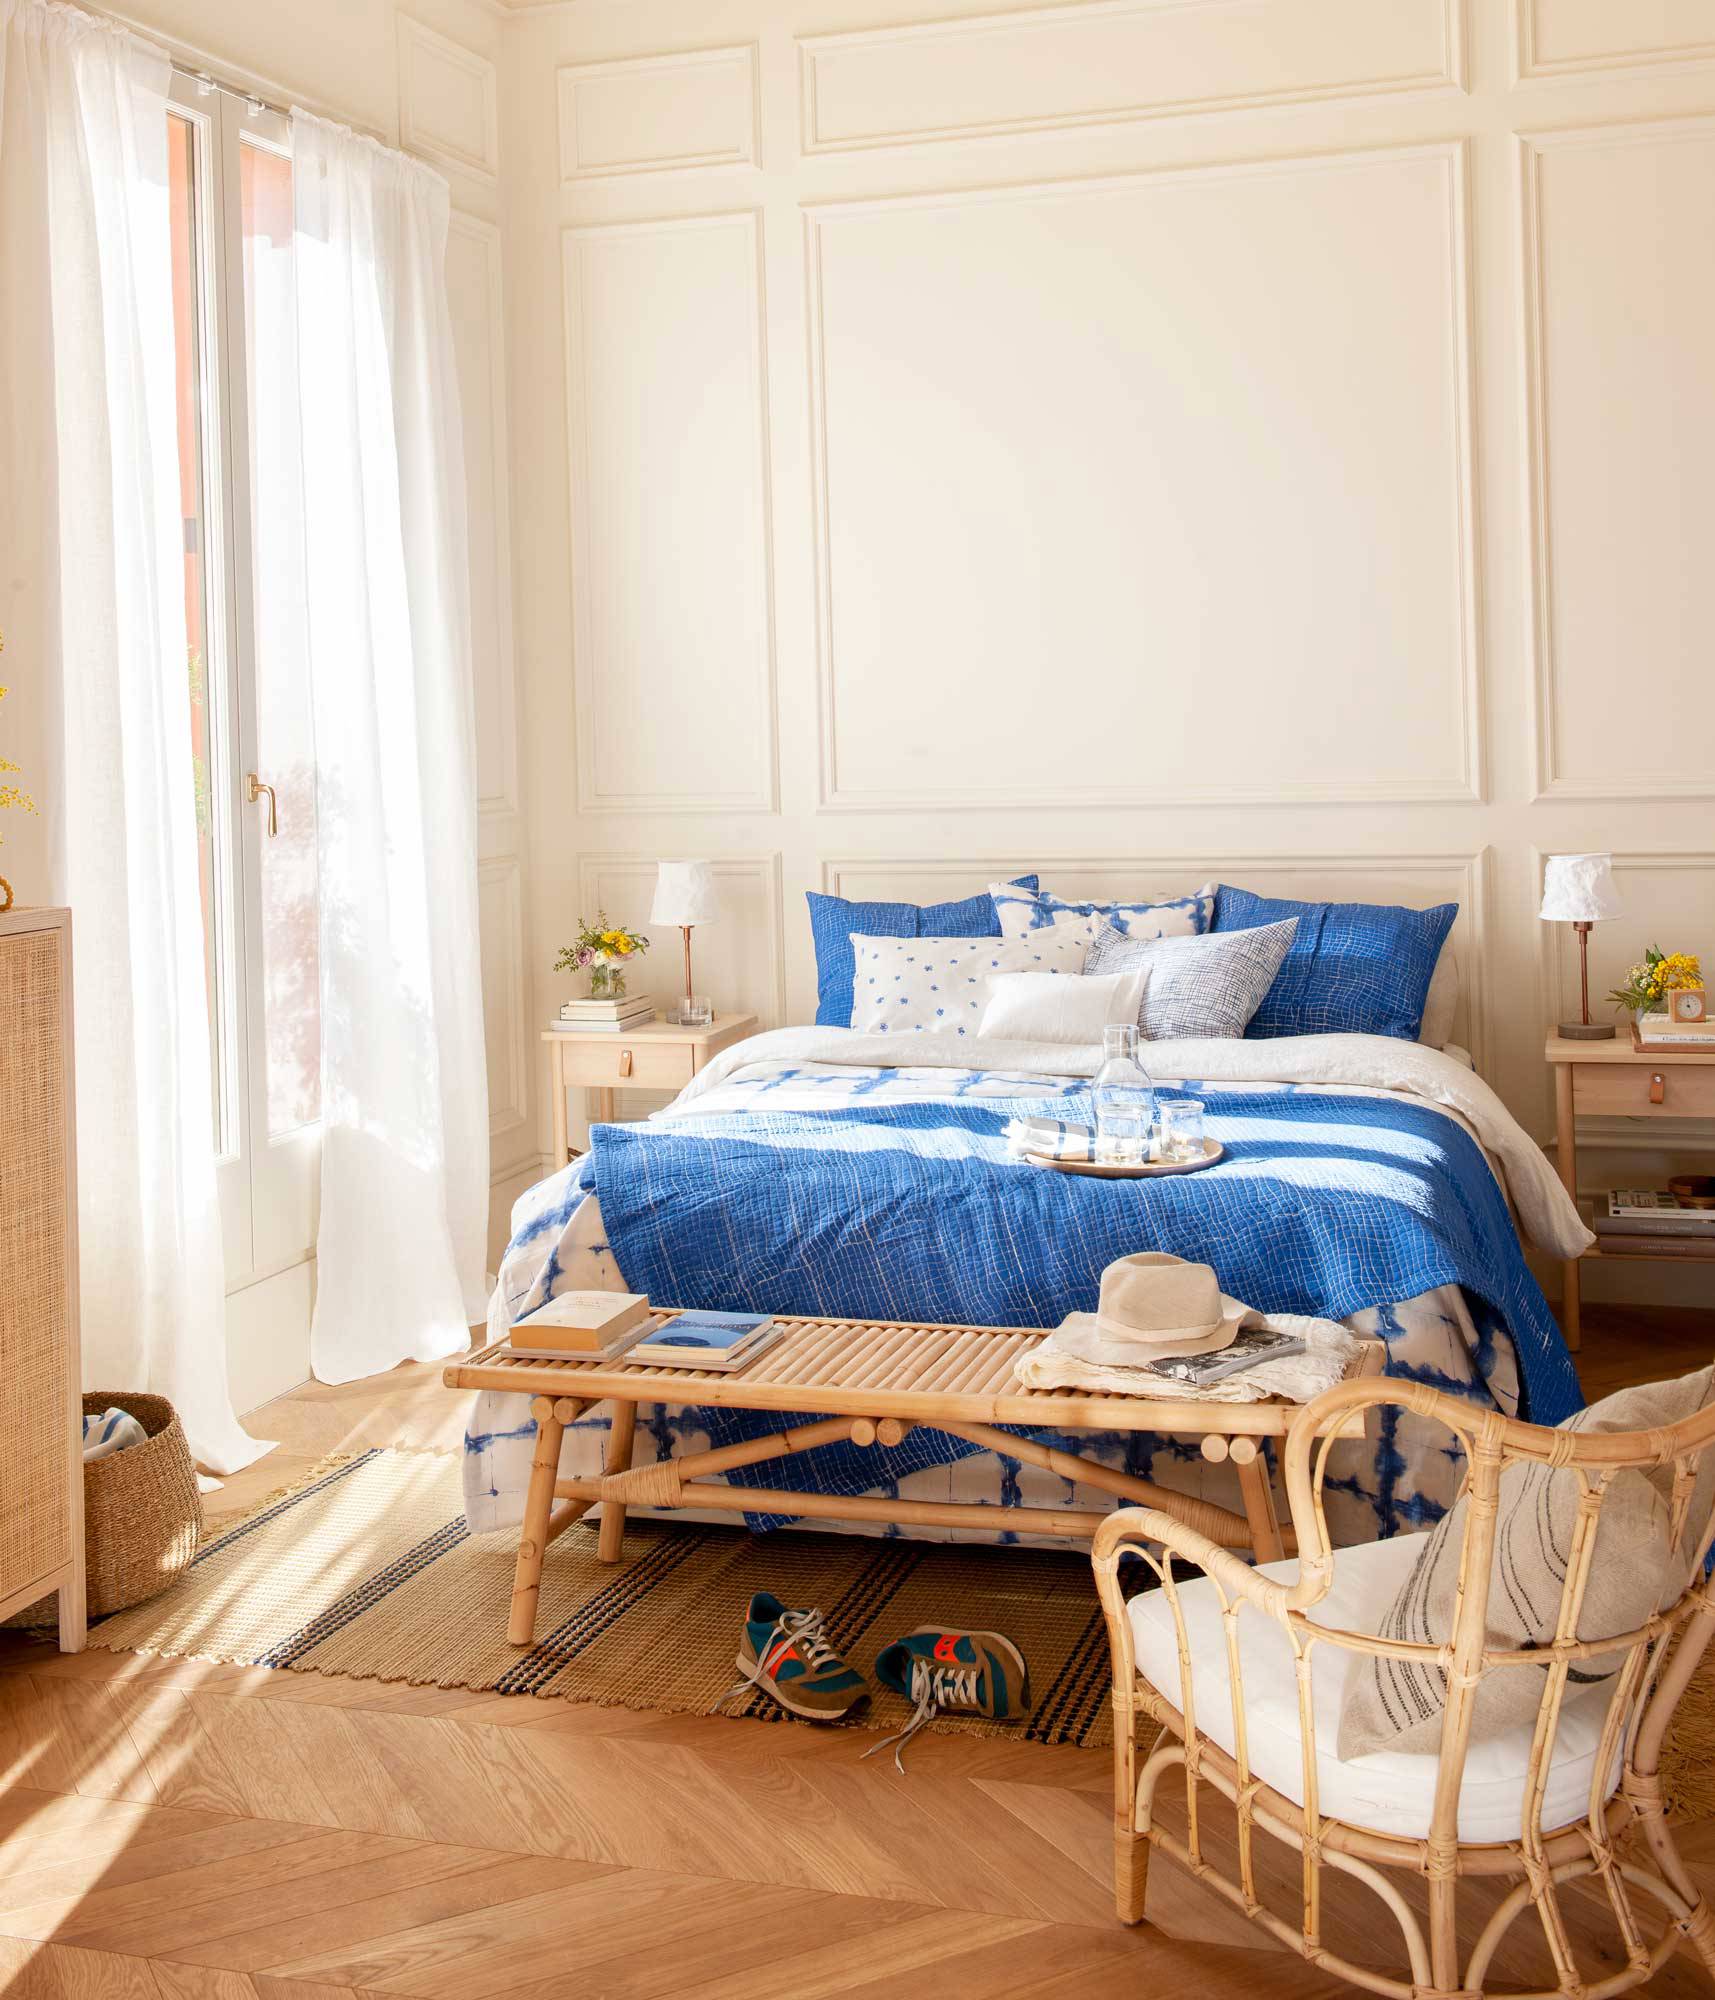 Dormitorio con molduras en la pared, muebles de madera y fibra, y ropa de cama azul.